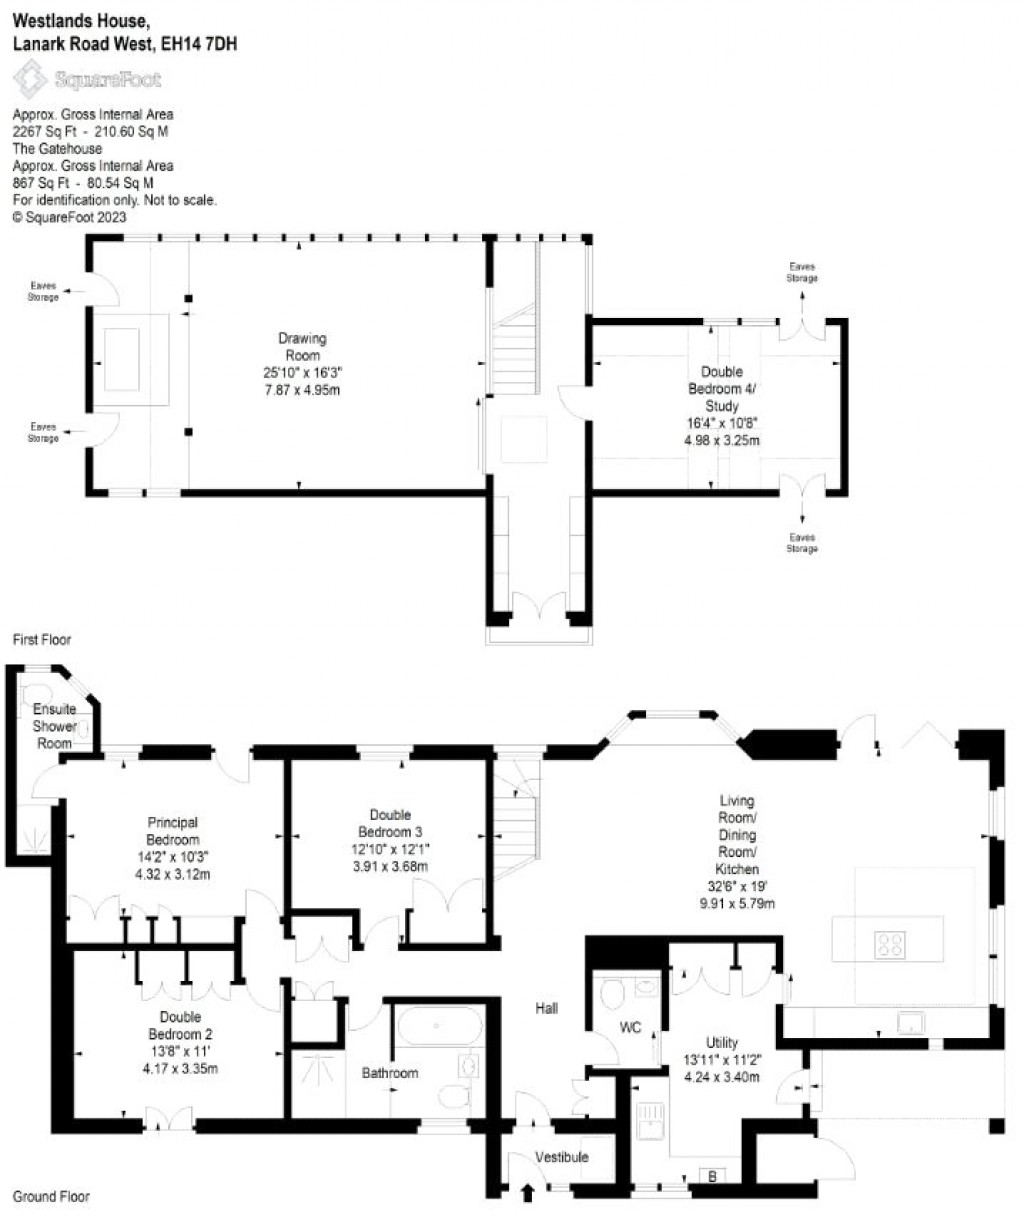 Floorplans For Westlands House, Lanark Road West, Balerno